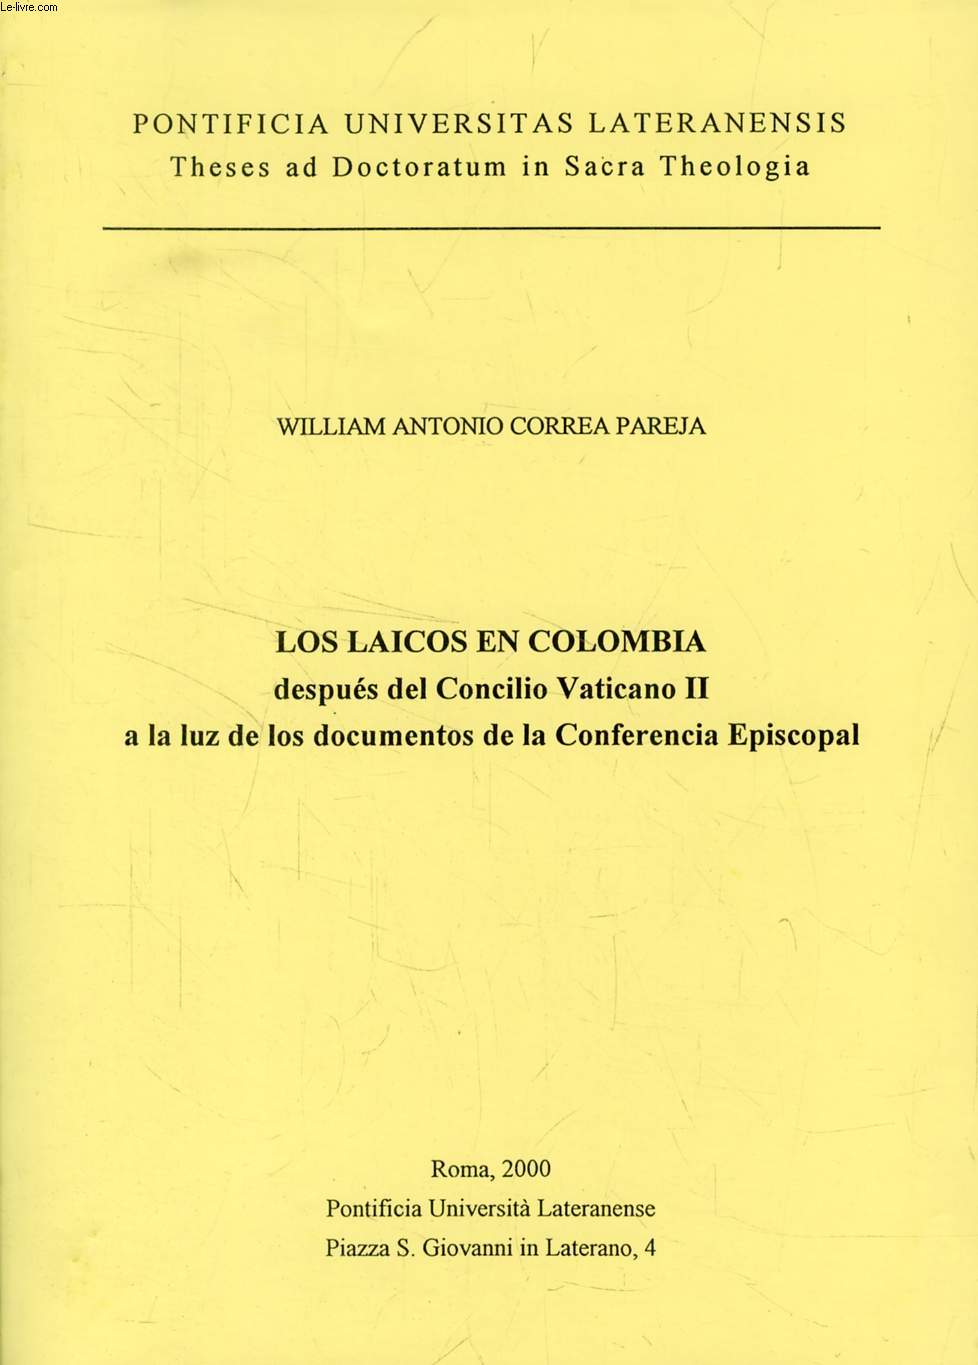 LOS LAICOS EN COLOMBIA DESPUES DEL CONCILIO VATICANO II, A LA LUZ DE LOS DOCUMENTOS DE LA CONFERENCIA ESPICOPAL (THESIS)